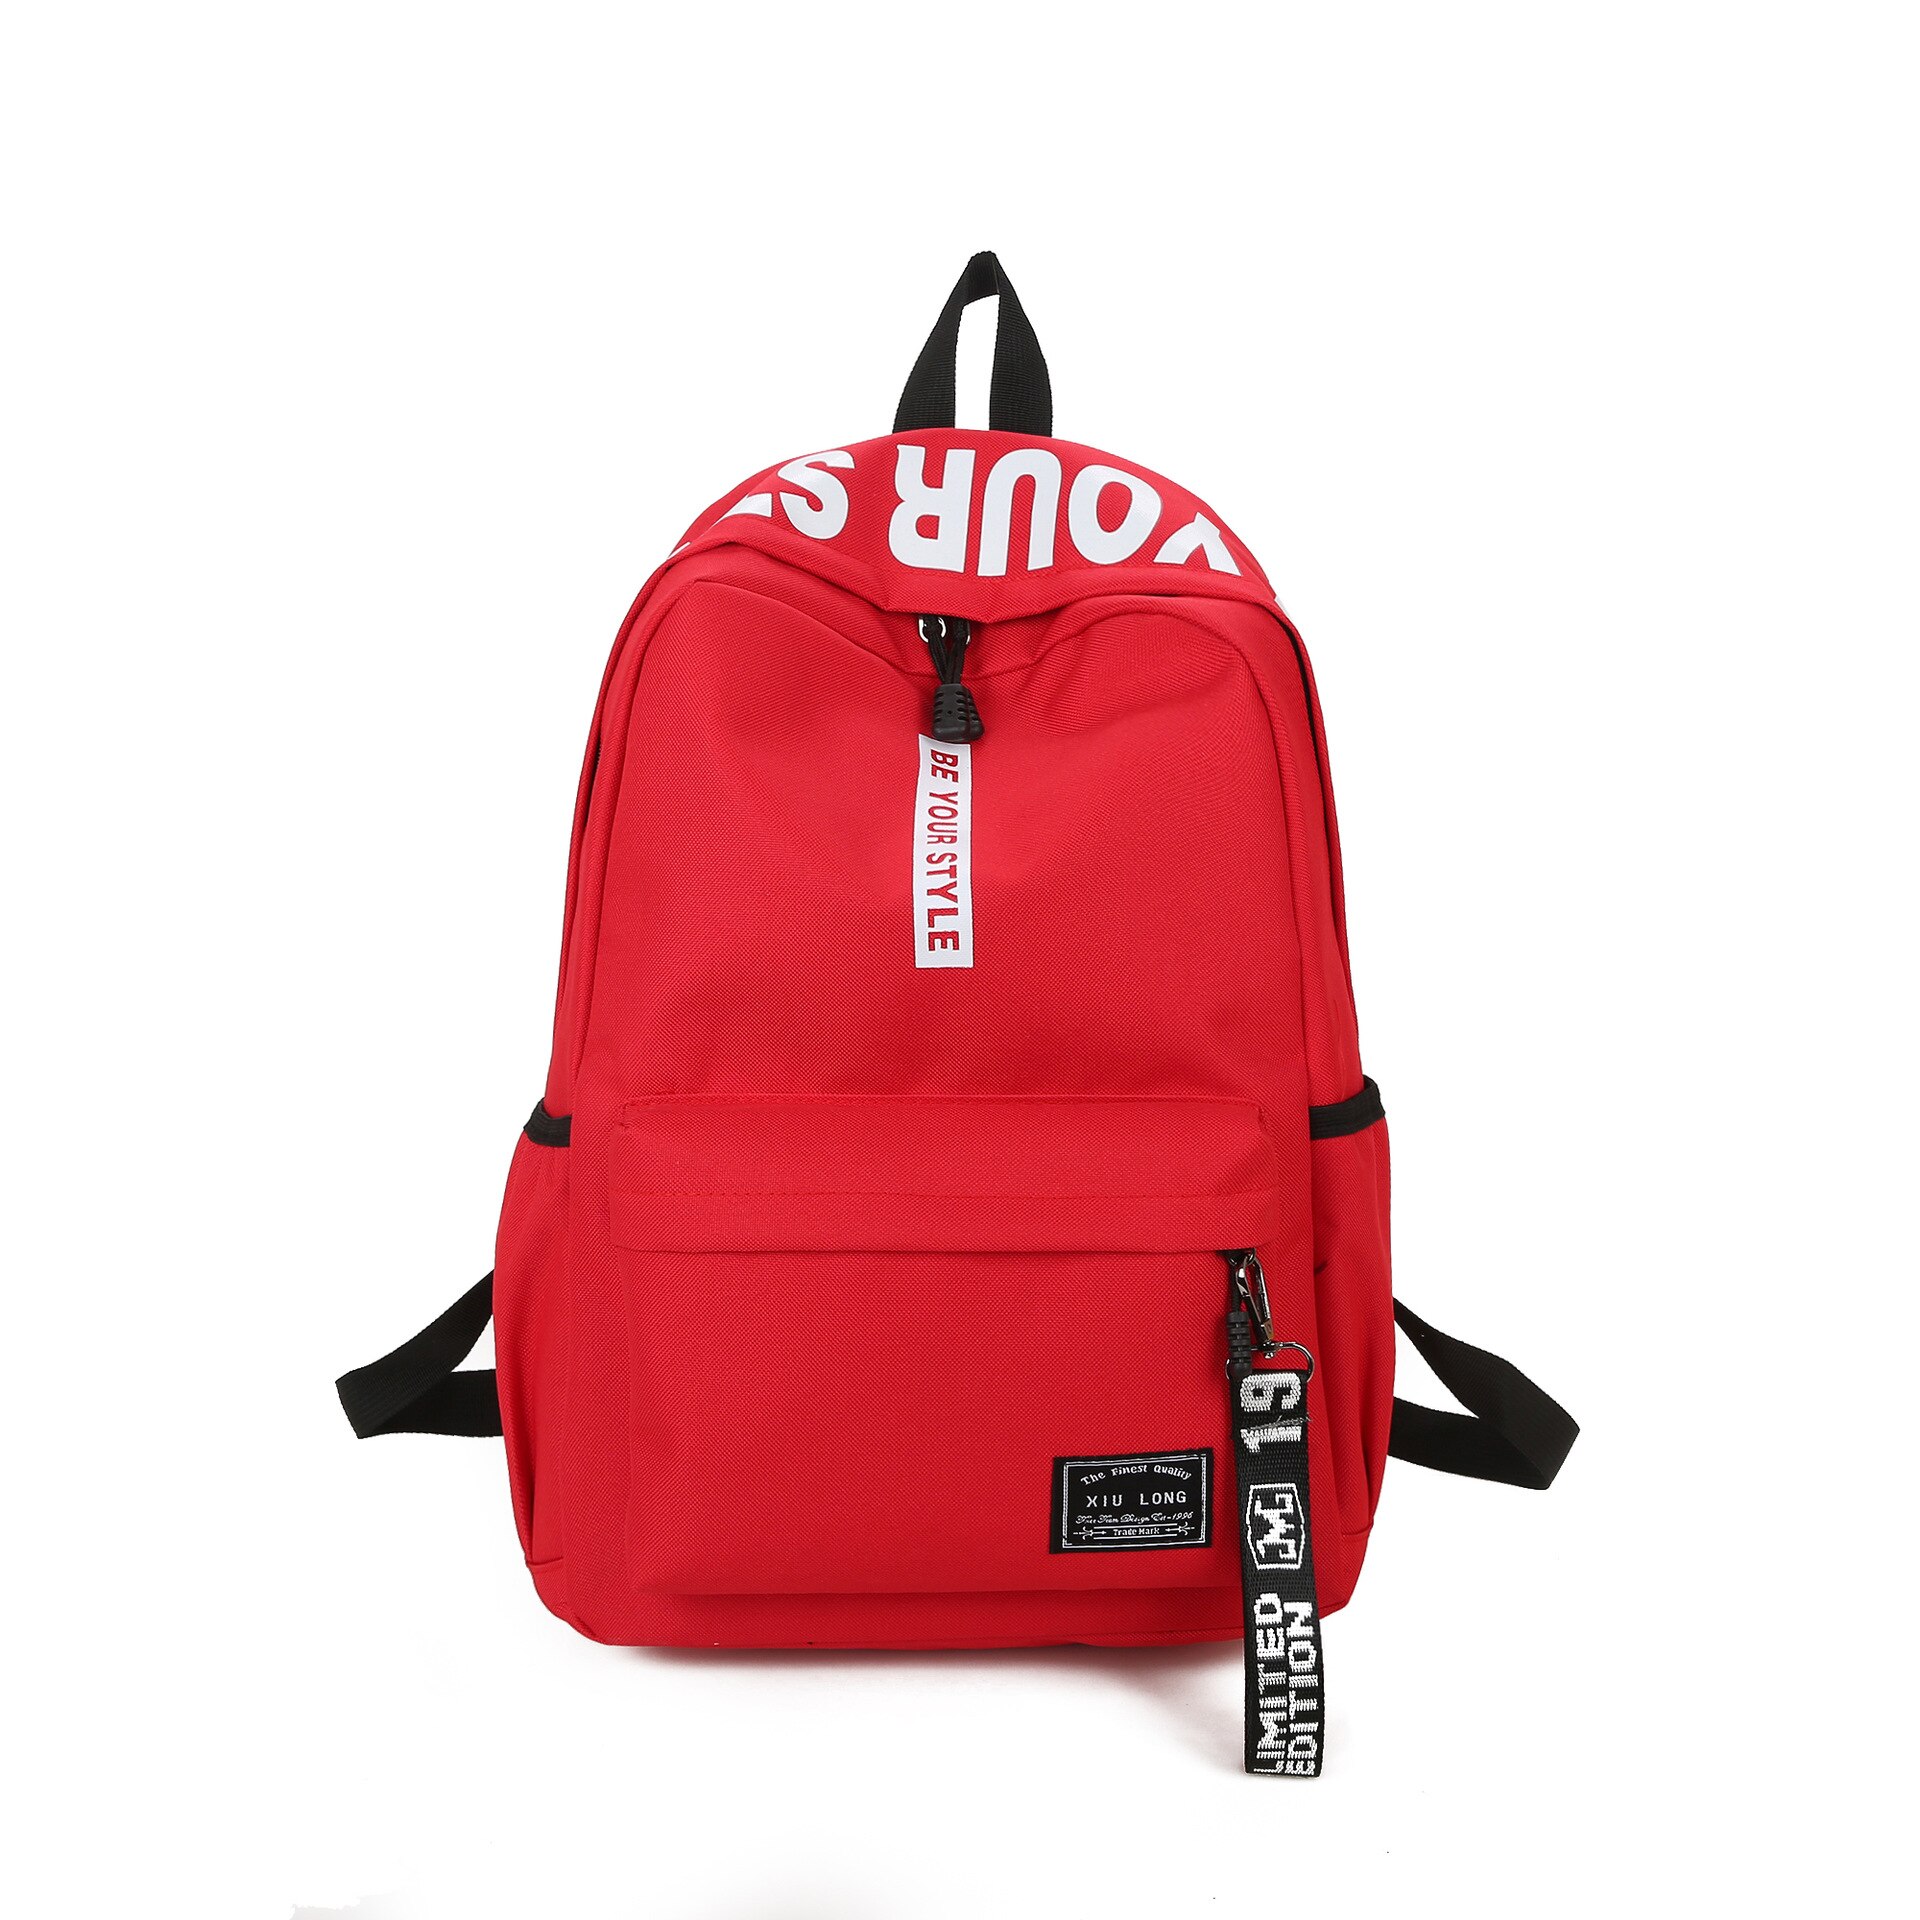 Sort nylon kvinder skoletasker til teenagepiger rygsæk kvindelige teenagere mænd skoletaske afslappet stil studerende bogtaske: Rød